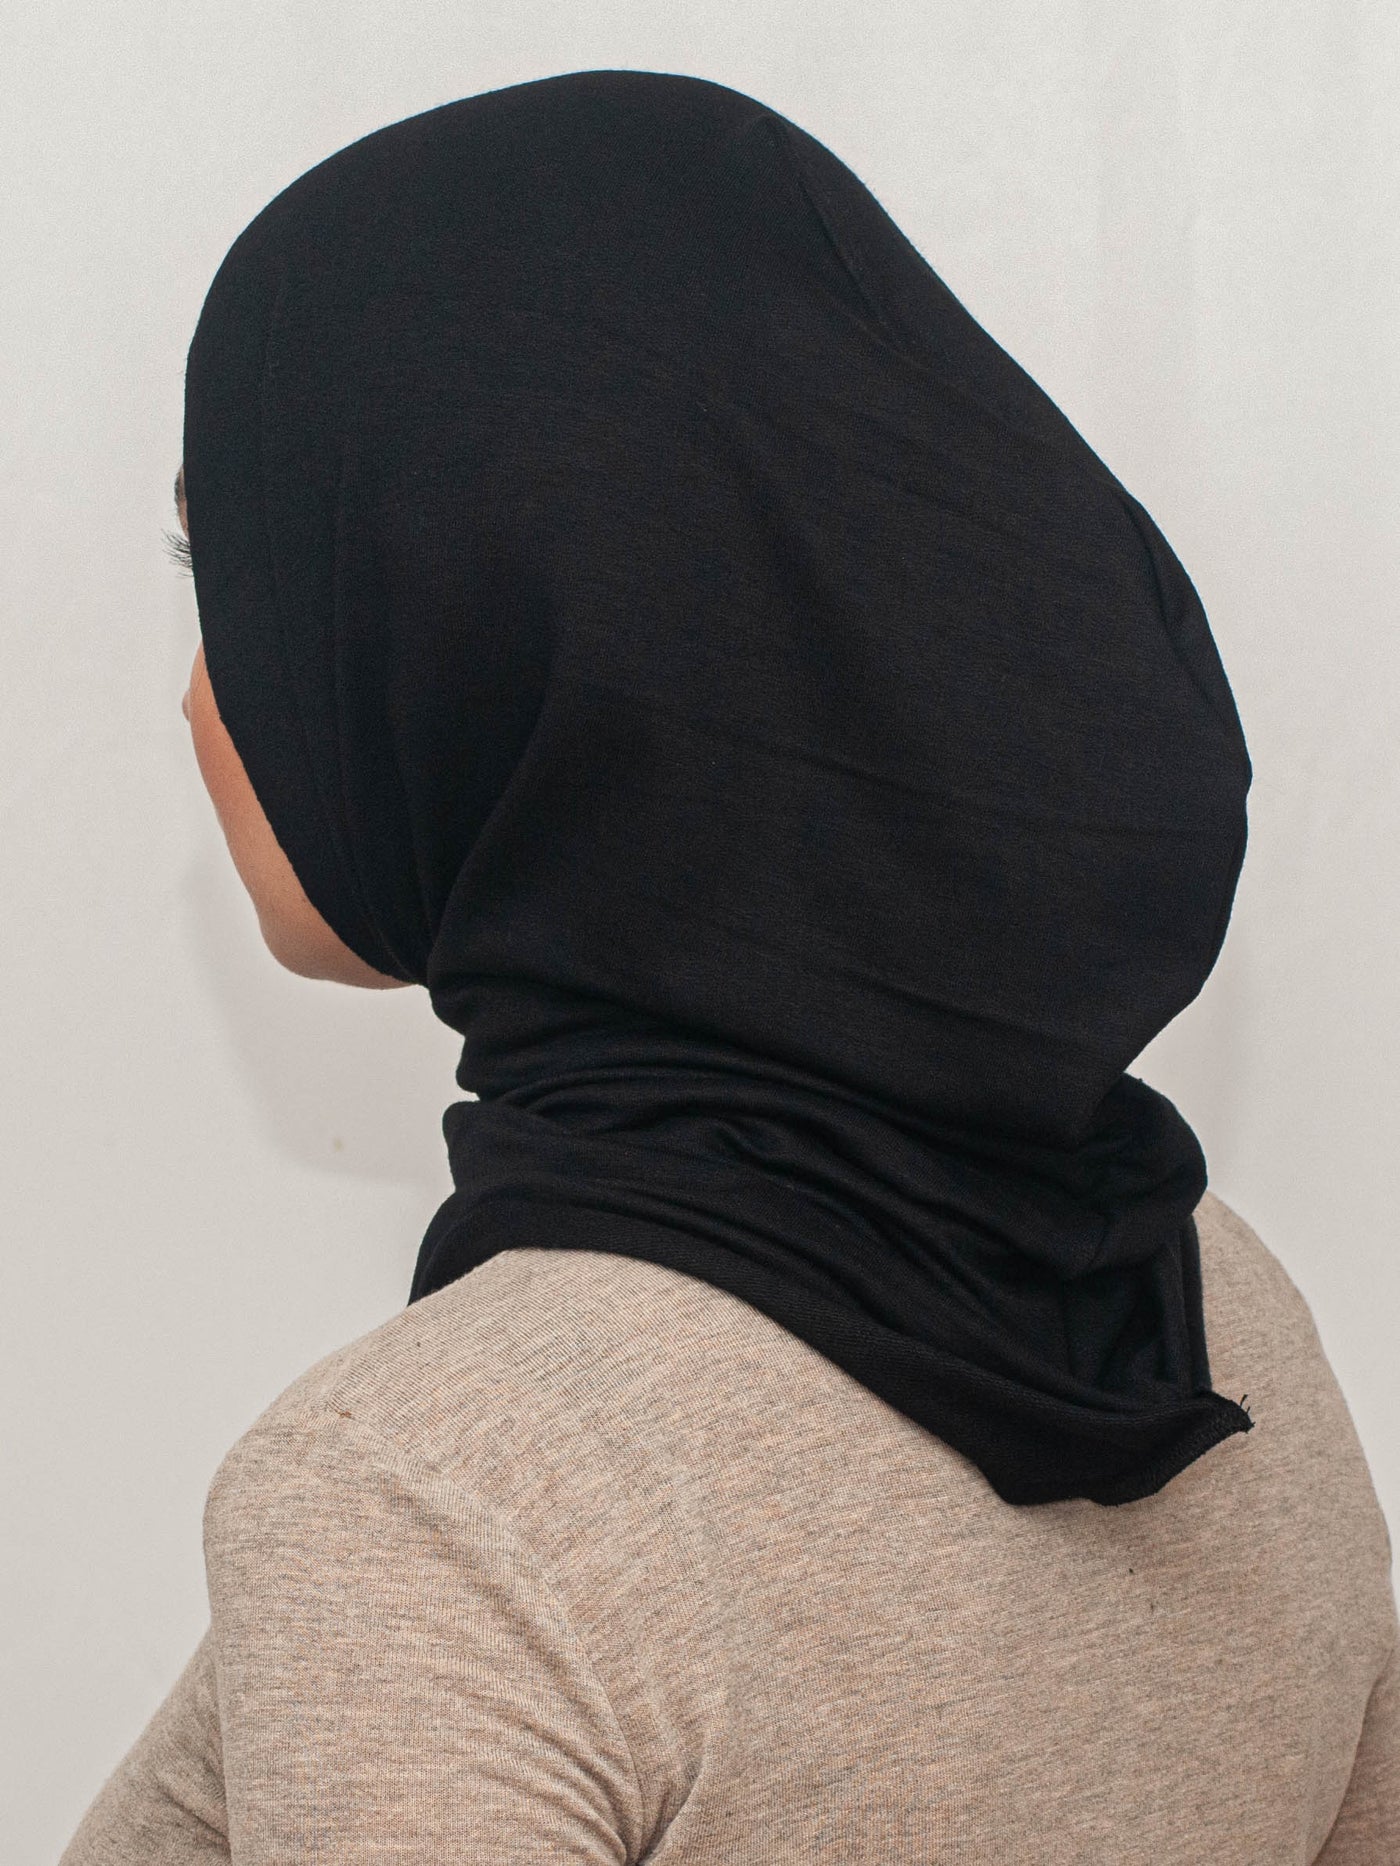 Practical hijab "Easy" - black